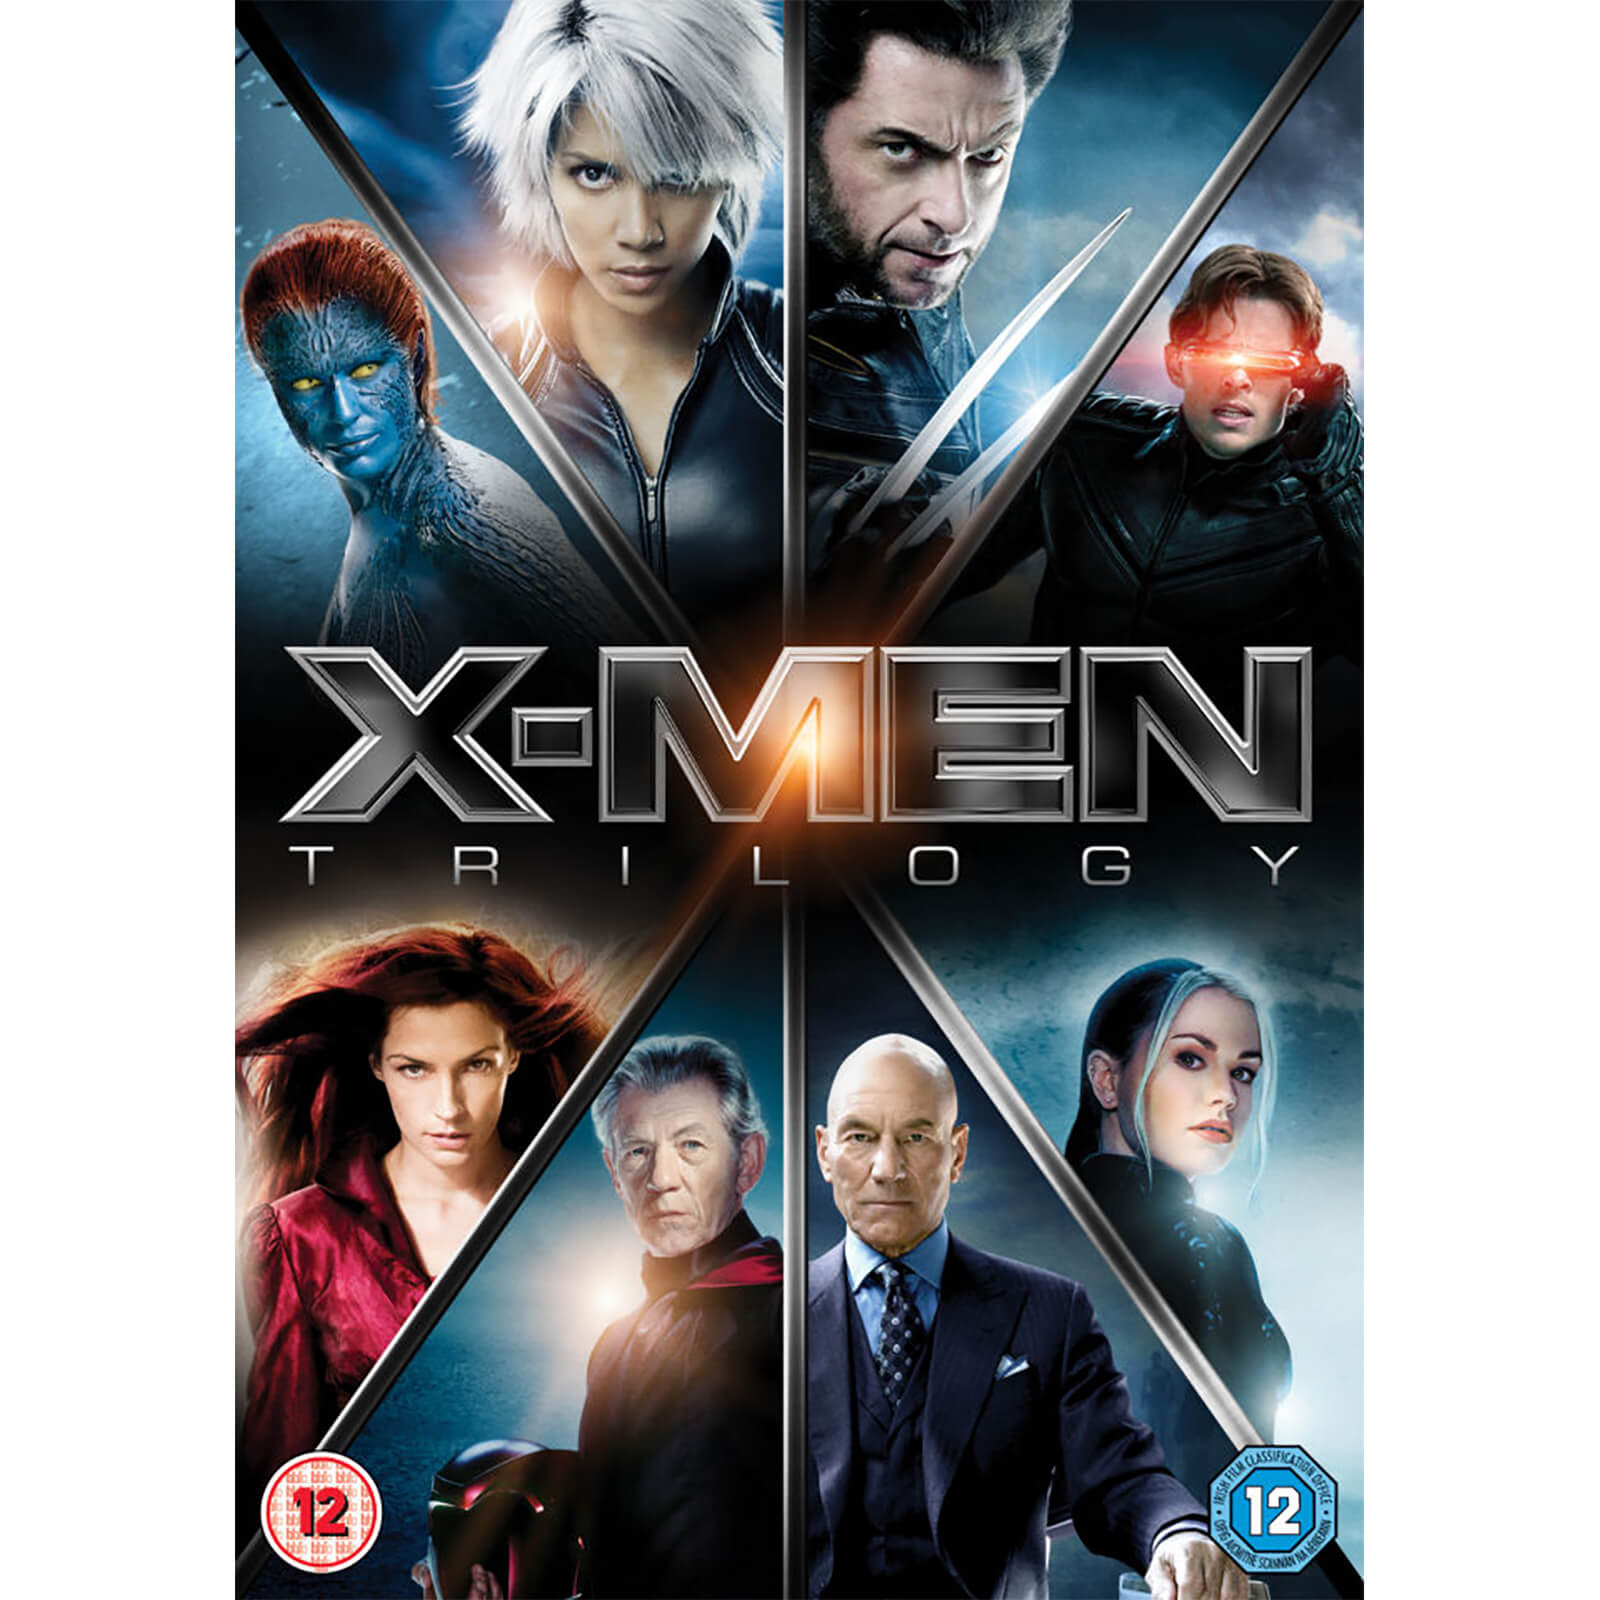 X-Men Trilogie von 20th Century Fox